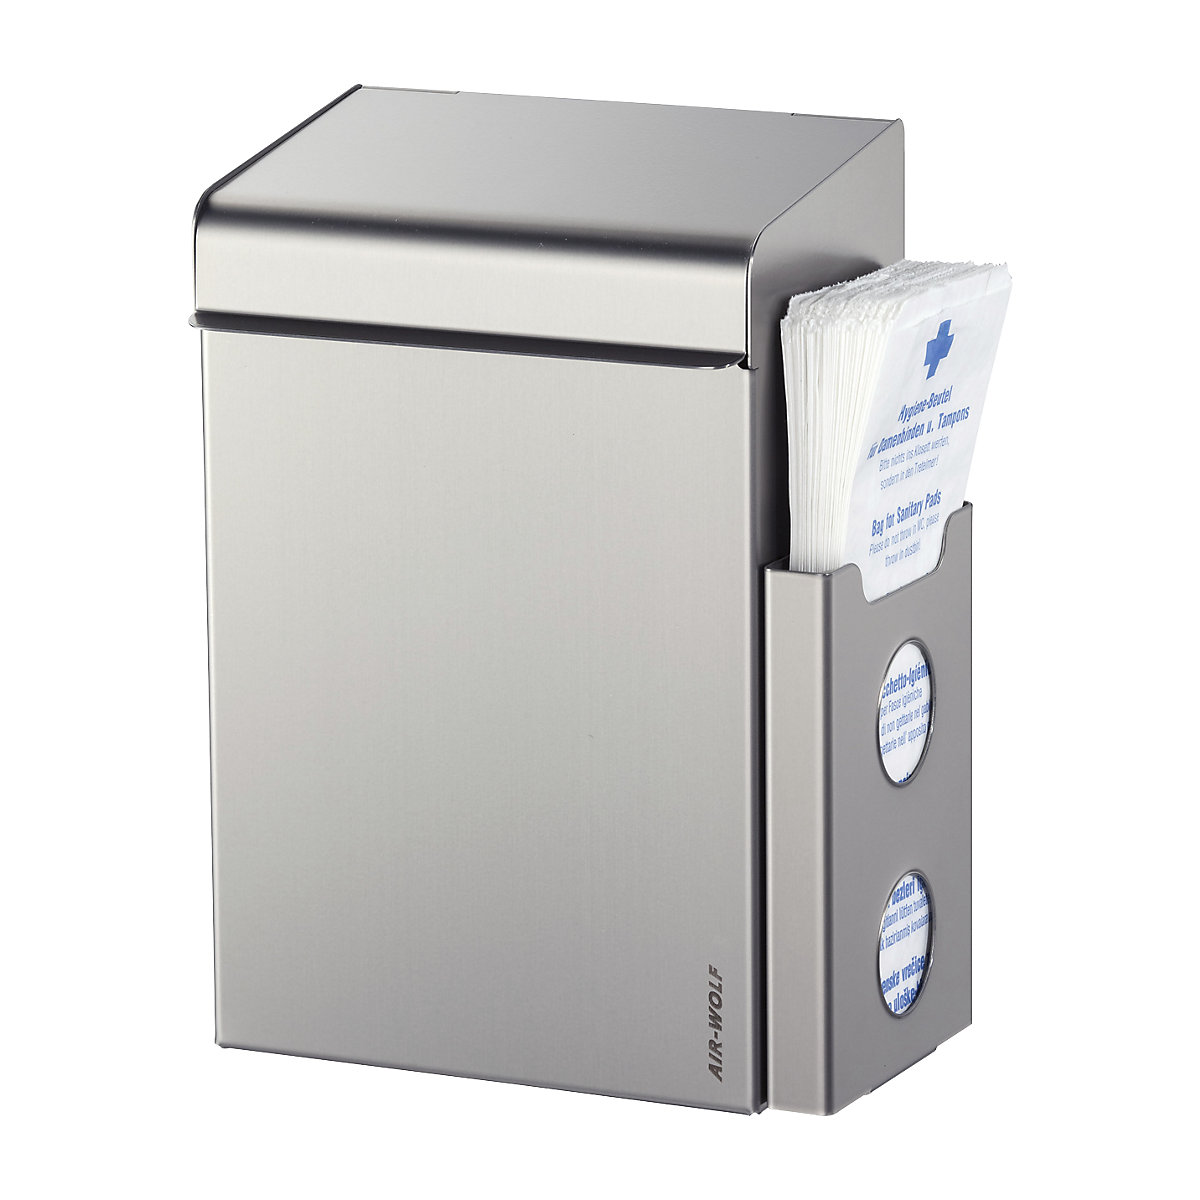 AIR-WOLF Hygieneabfallbehälter mit Beutelspender, Volumen 8 l, BxHxT 220 x 342 x 153 mm, Edelstahl gebürstet